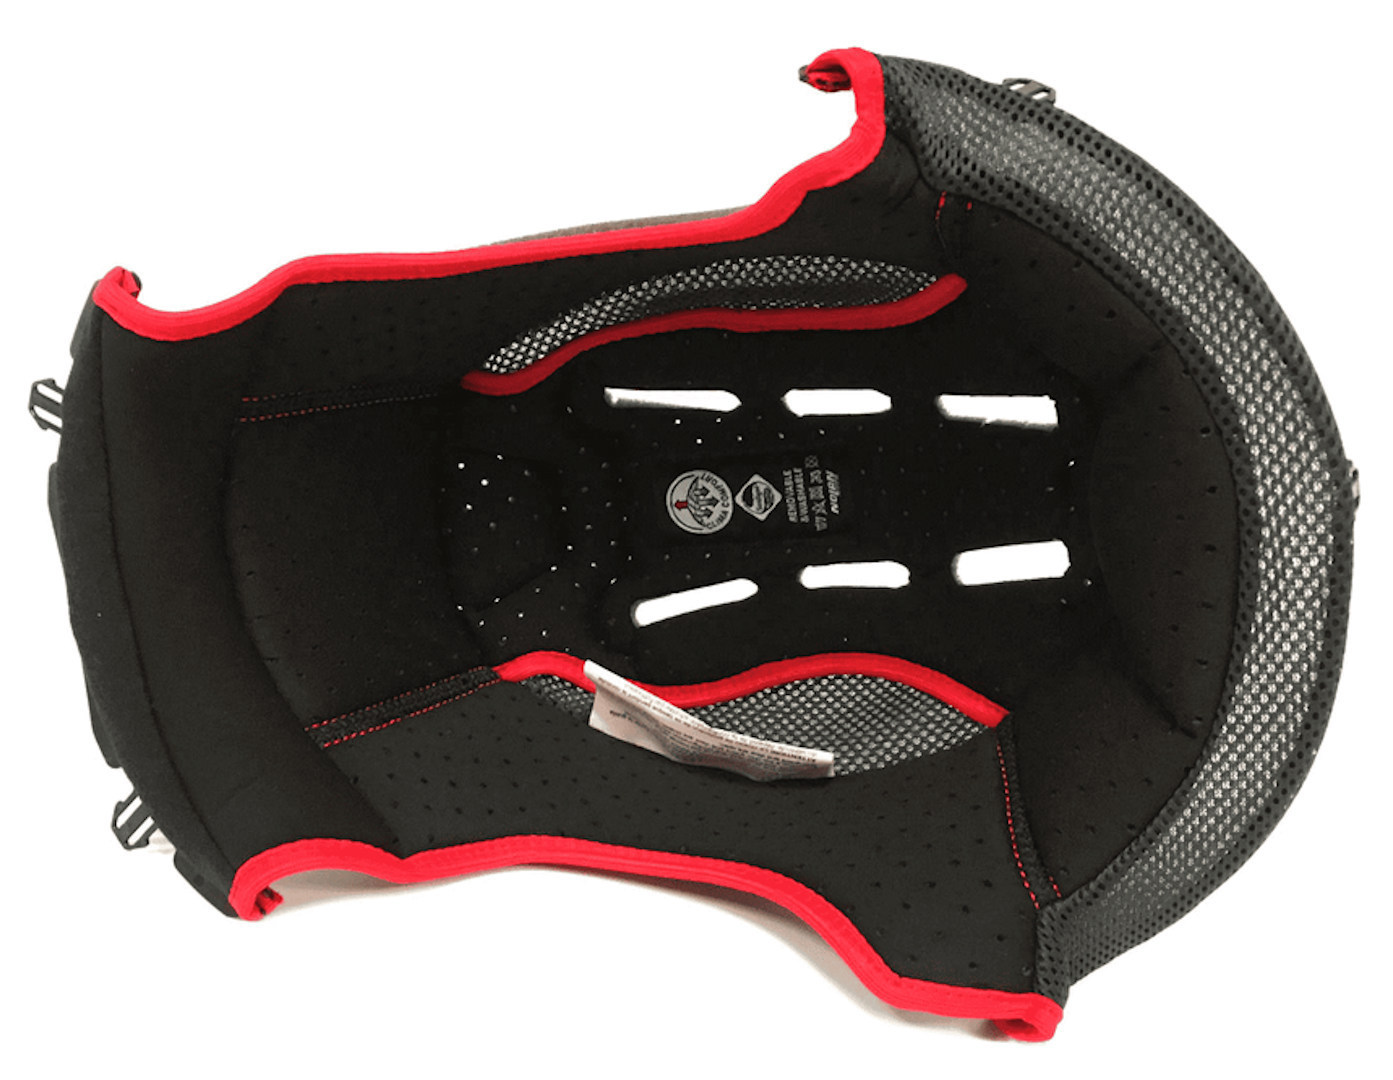 Nolan N33/Evo Clima Comfort Innenfutter, schwarz-rot, Gre XL, schwarz-rot, Gre XL unter Bekleidung